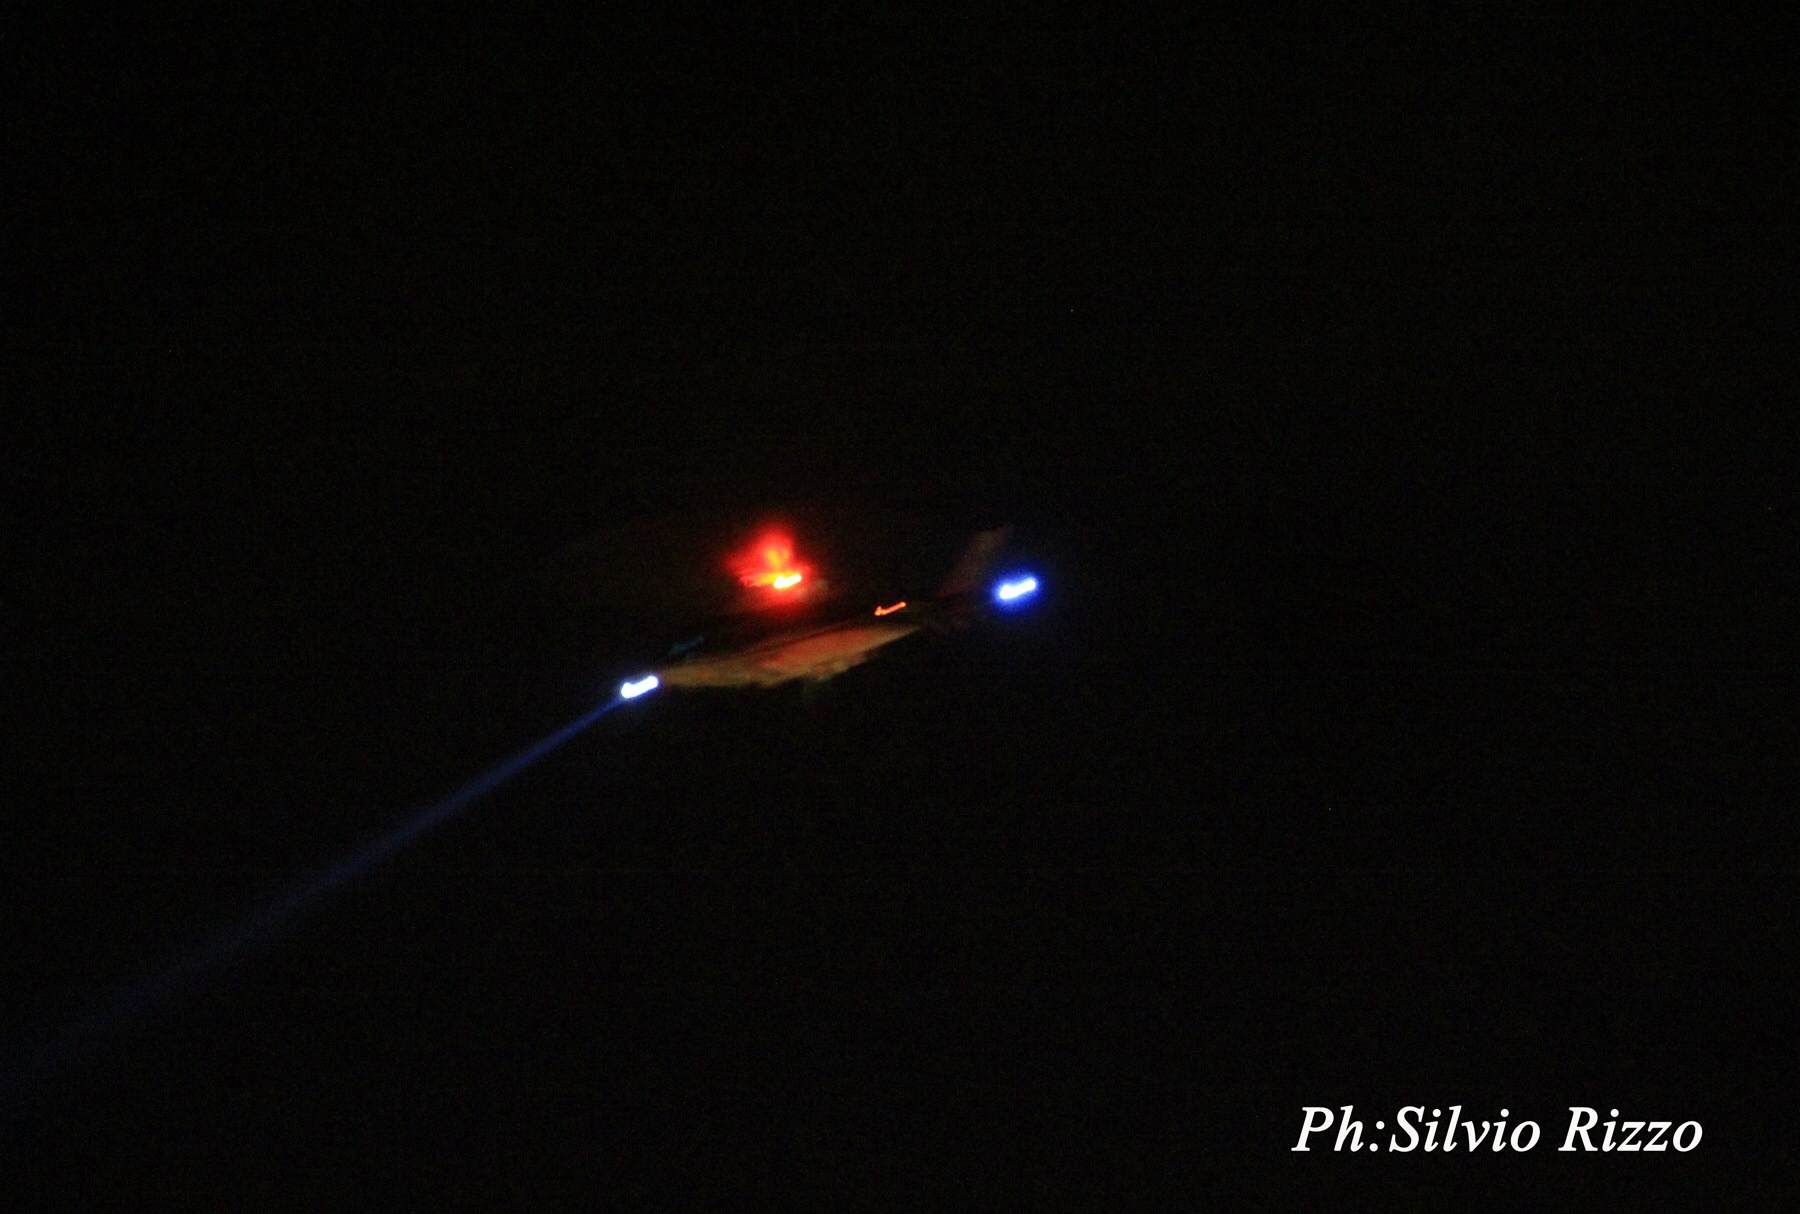  Santa Croce si sveglia in piena notte: elicottero sorvola la città alla ricerca di un narcotrafficante